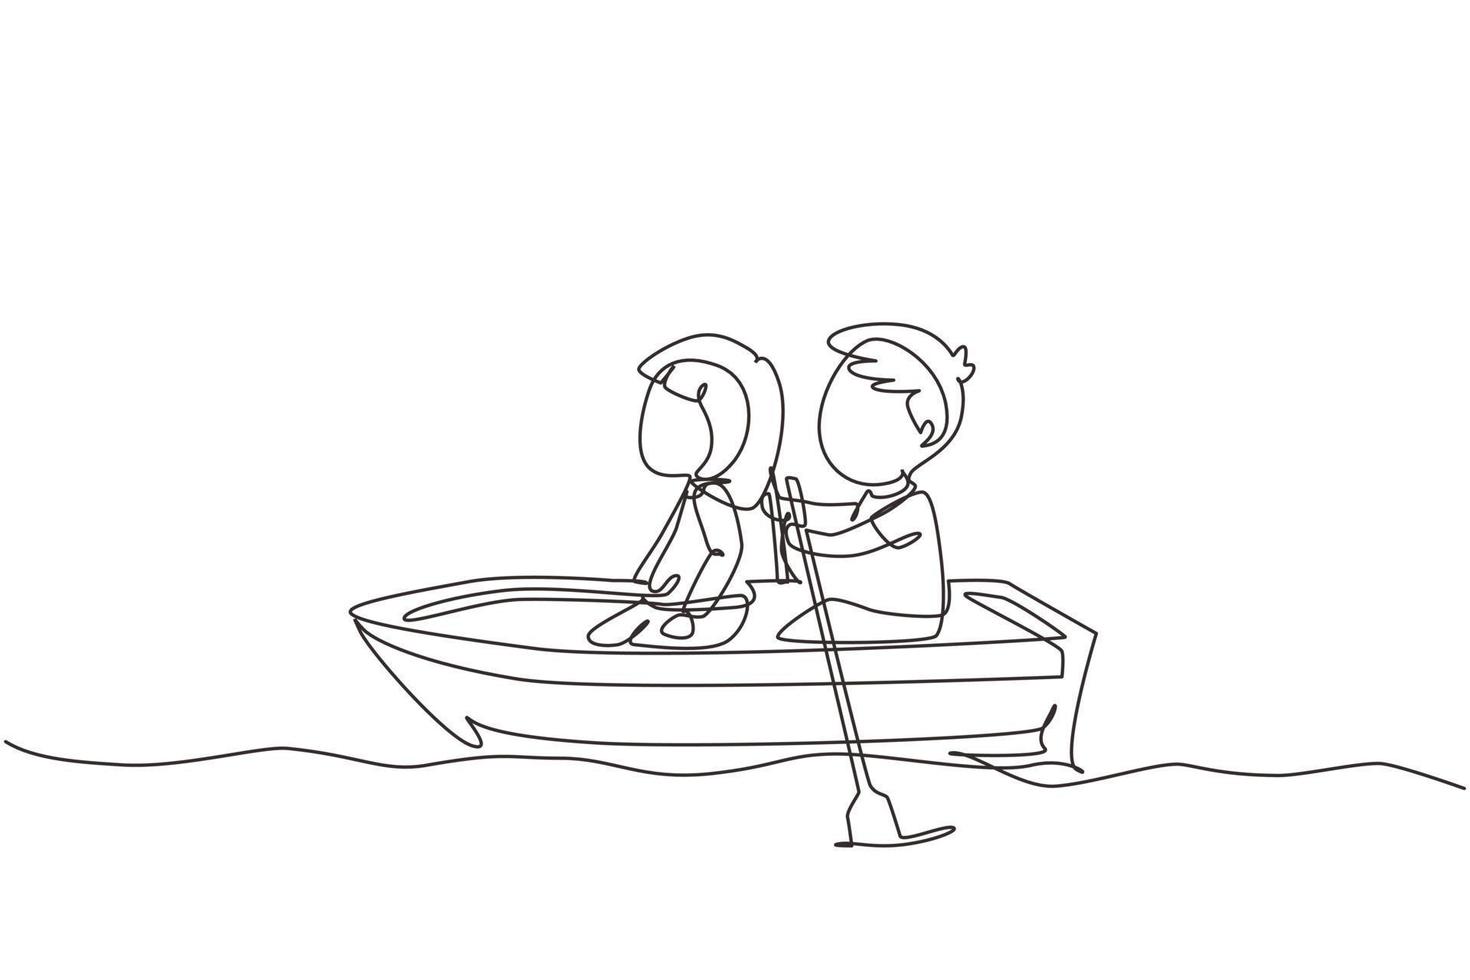 enda kontinuerlig linjeteckning liten pojke och flicka rider på båt tillsammans. barn rider på träbåt vid floden. barn roddbåt på sjön. glada barn paddla båt. en rad grafisk design vektor